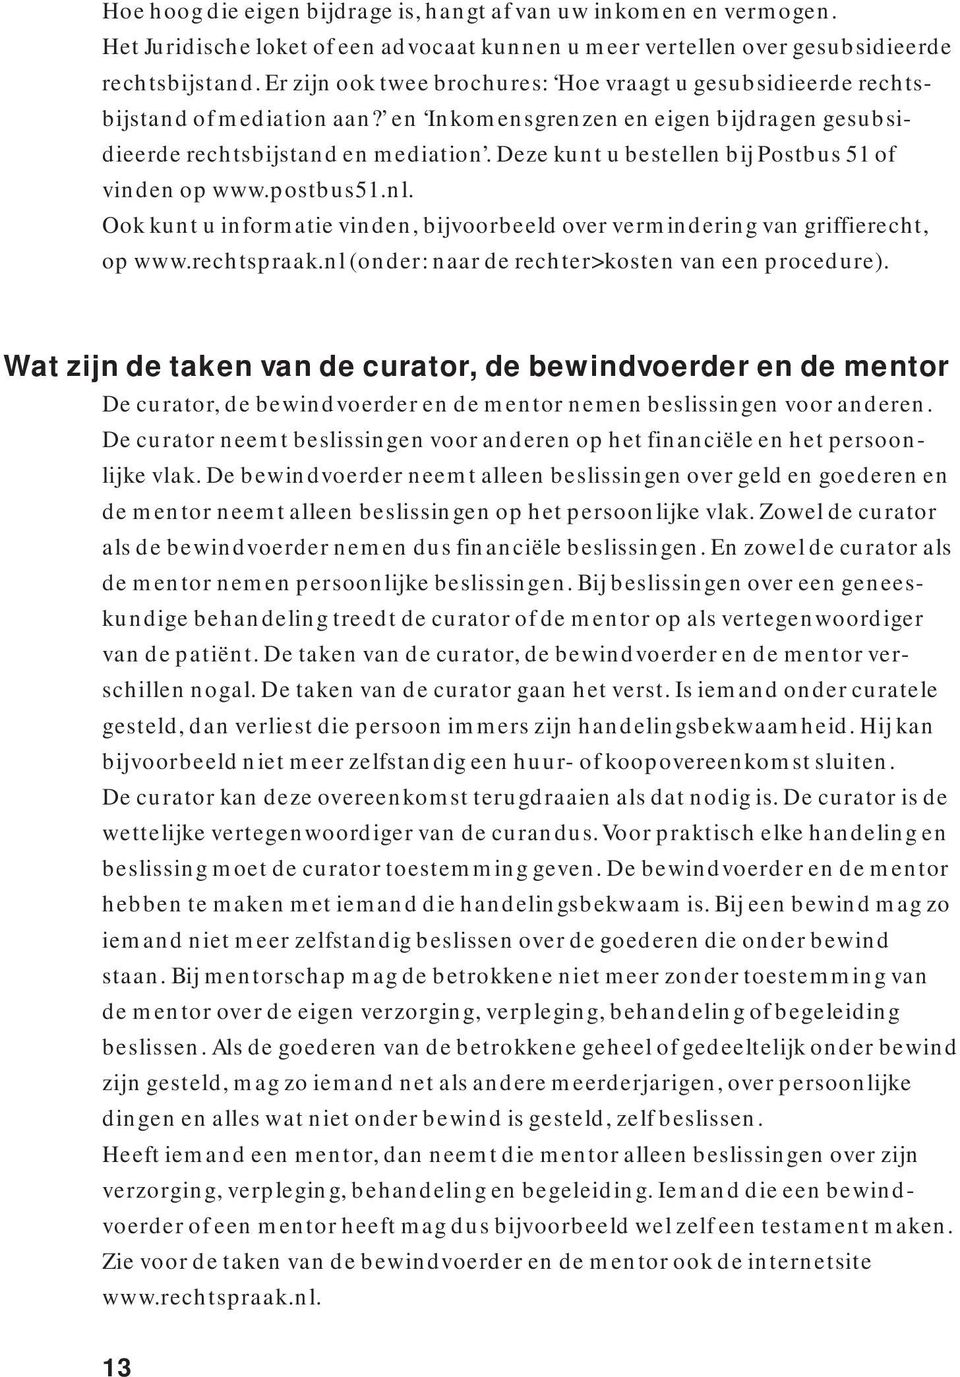 Deze kunt u bestellen bij Postbus 51 of vinden op www.postbus51.nl. Ook kunt u informatie vinden, bijvoorbeeld over vermindering van griffierecht, op www.rechtspraak.